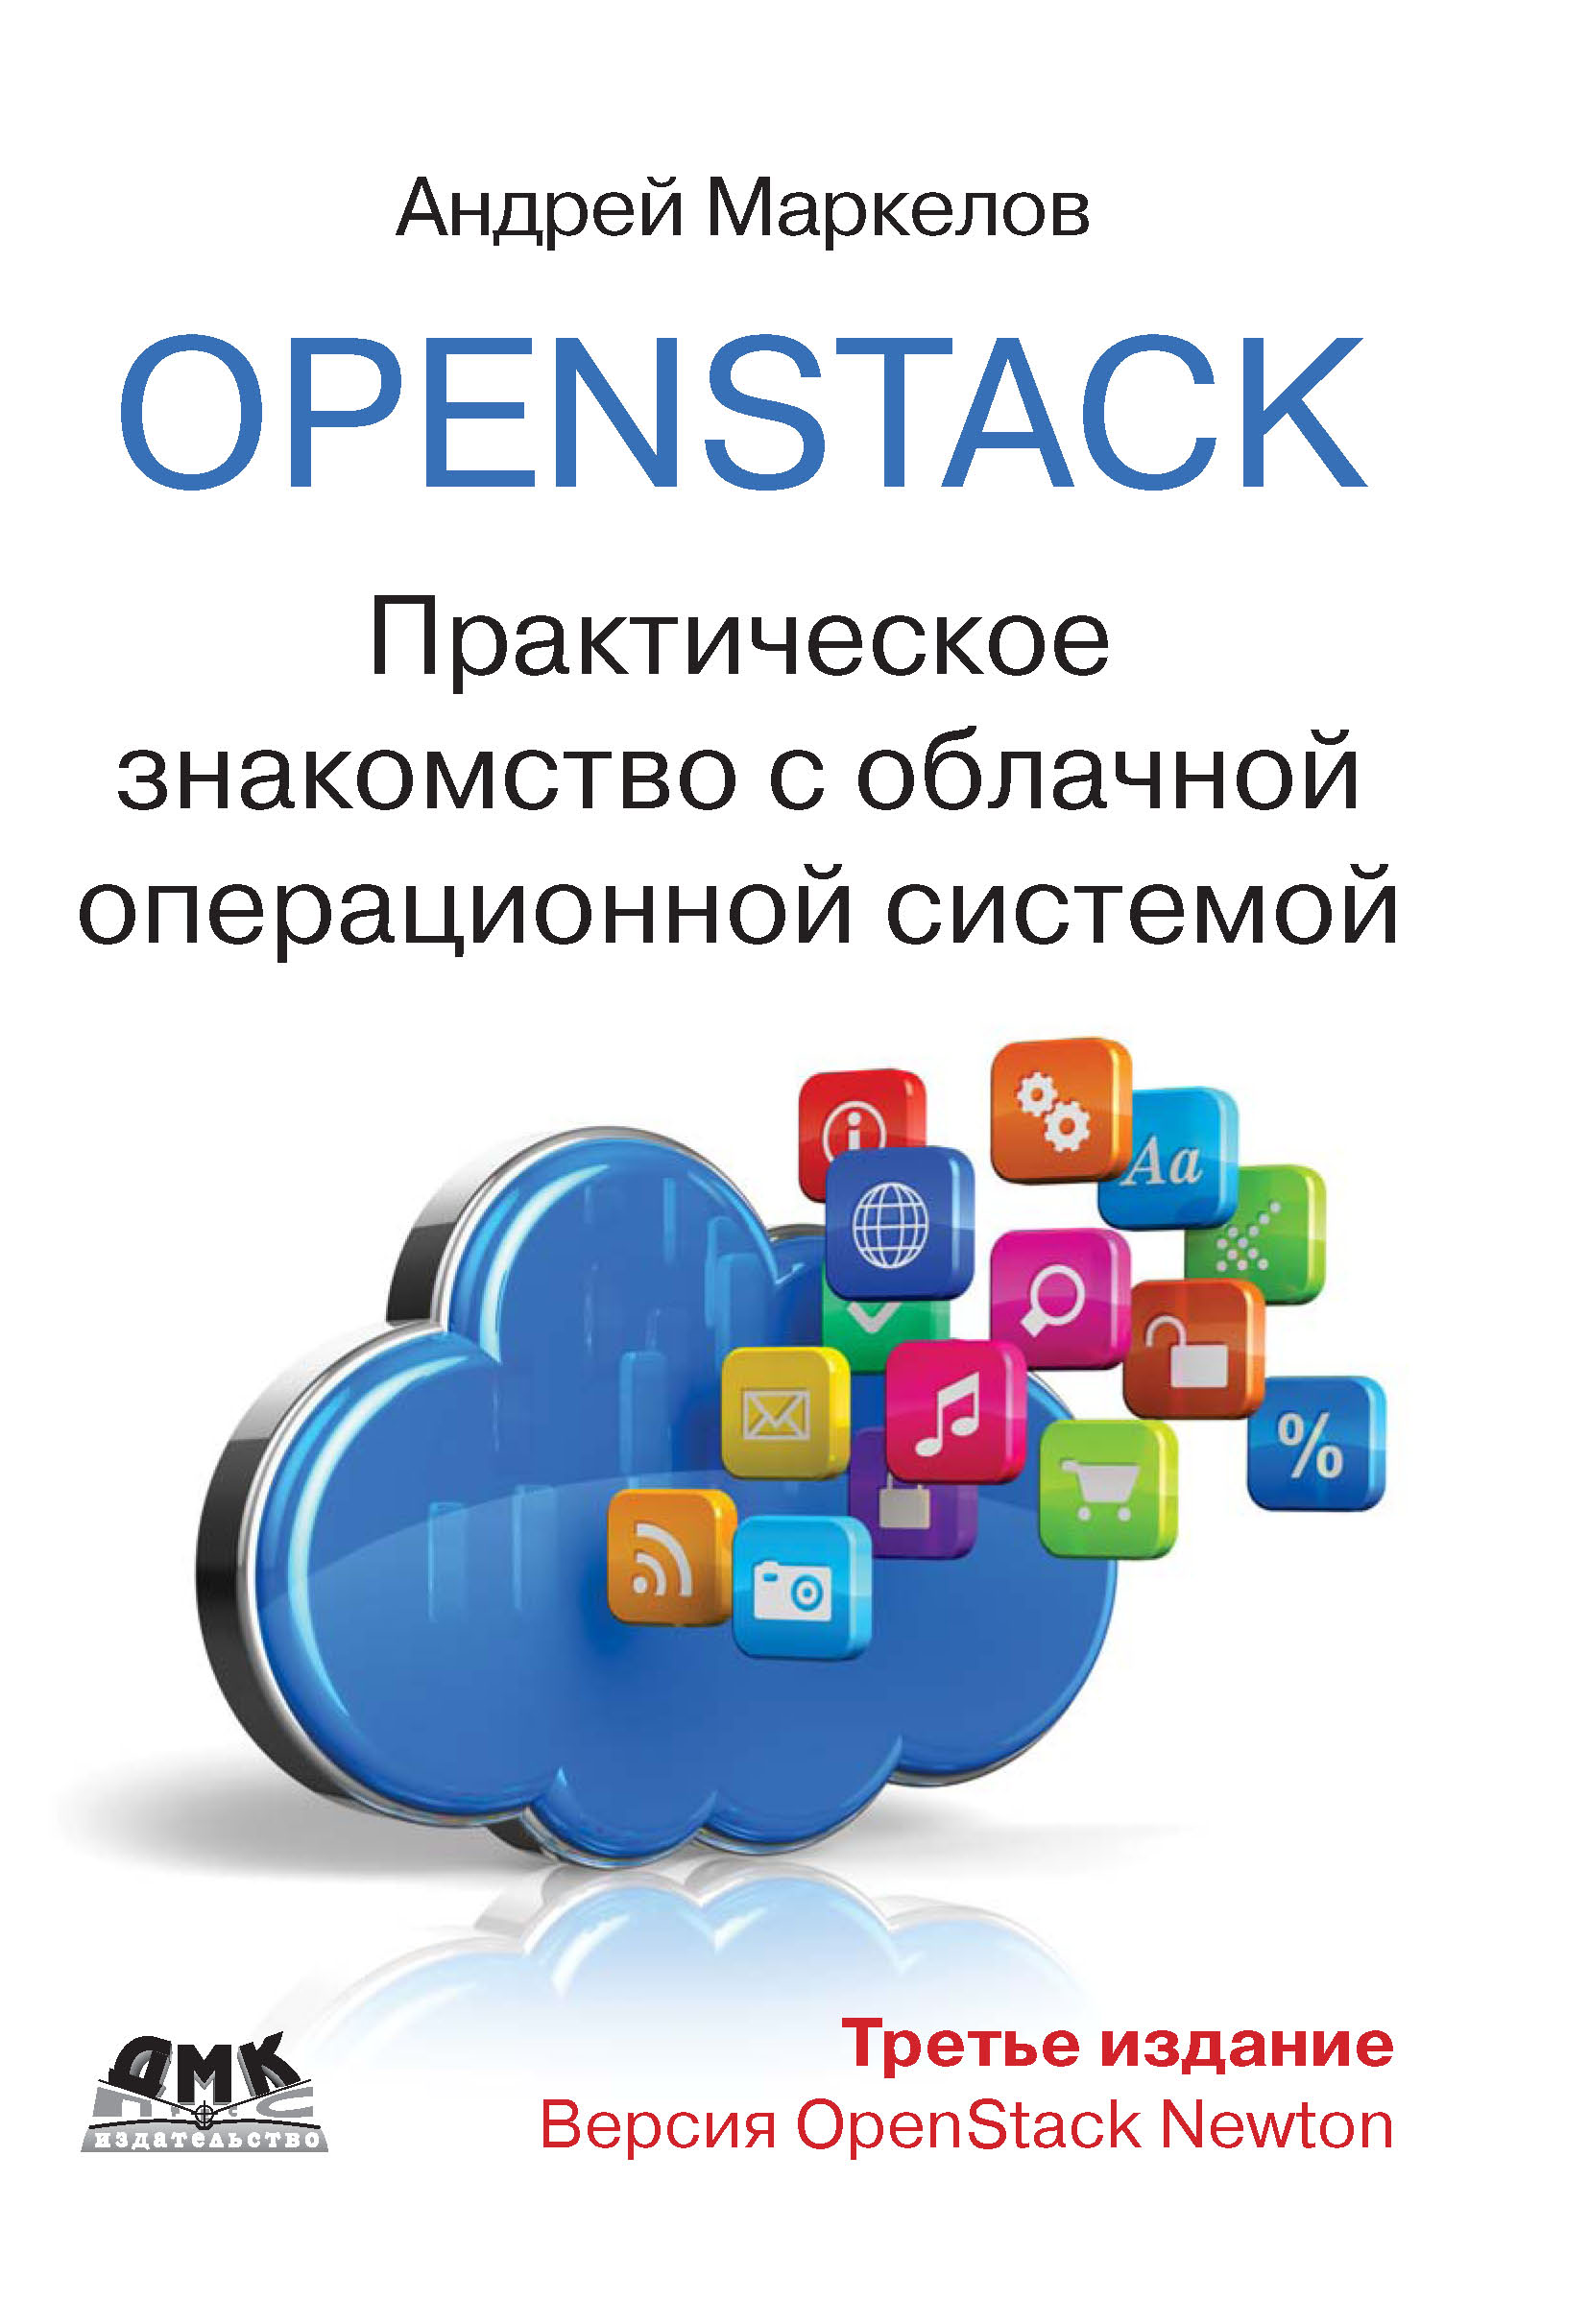 OpenStack.Практическое знакомство с облачной операционной системой